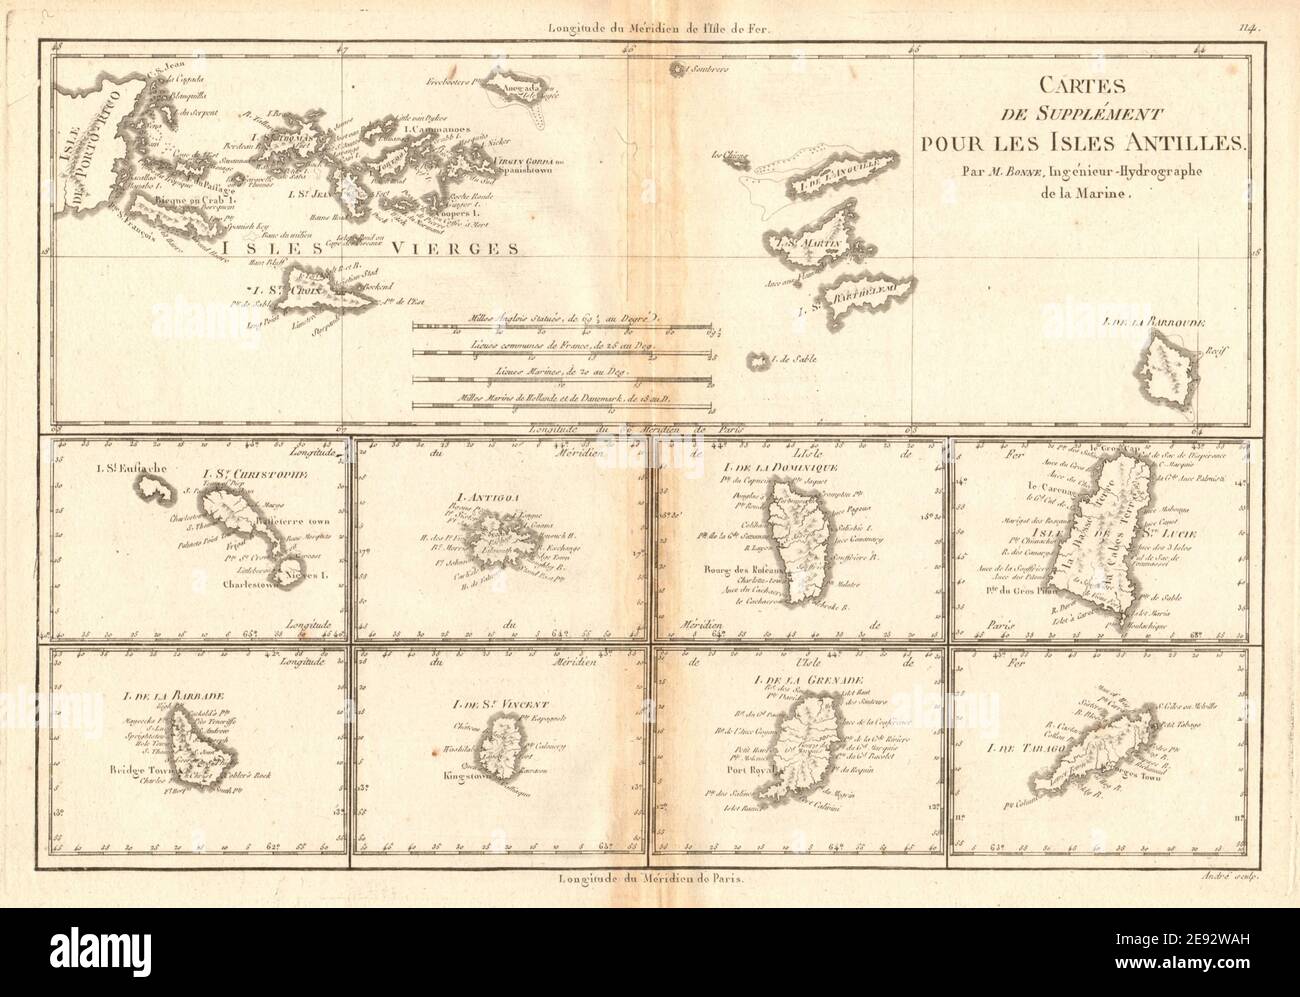 Cartes de supplément pour les Isles Antilles. West Indies Islands BONNE 1788 map Stock Photo